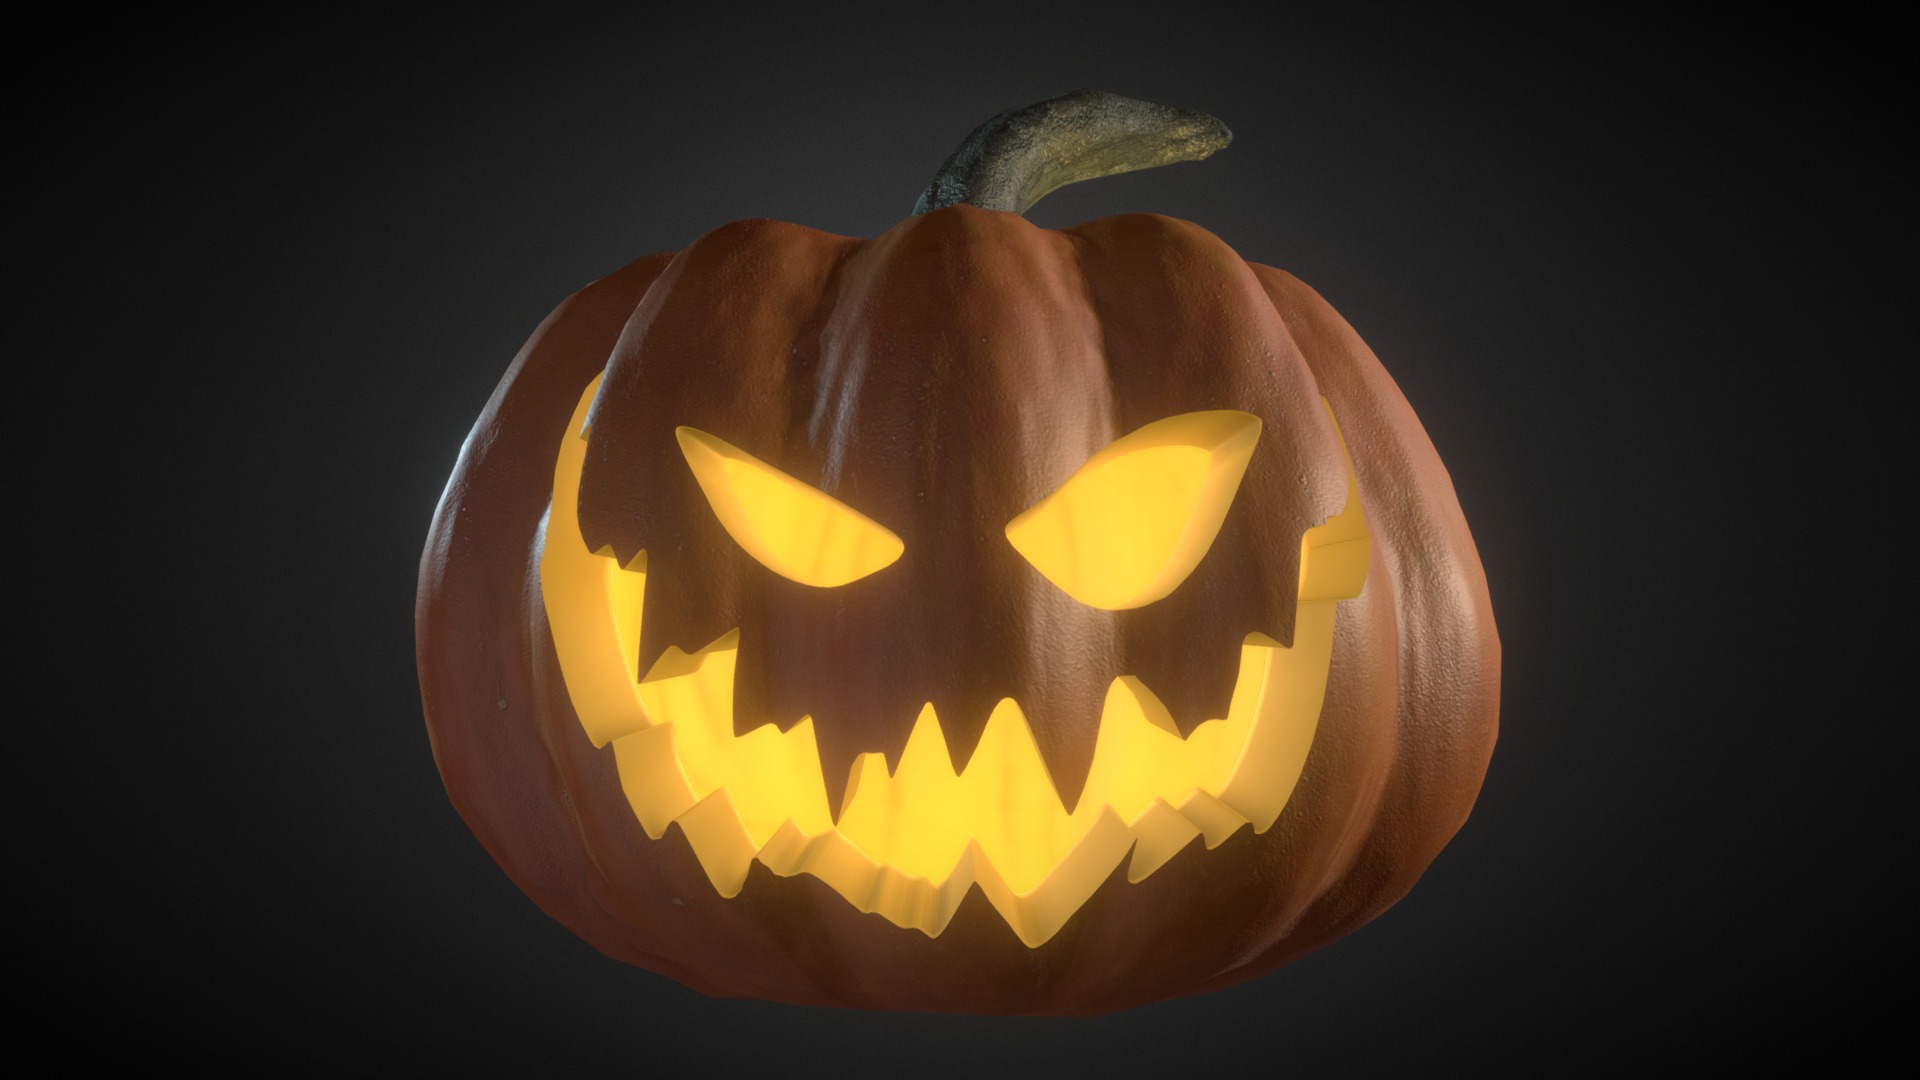 3D model Halloween Pumpkin - This is a 3D model of the Halloween Pumpkin. The 3D model is about a carved pumpkin with a face.